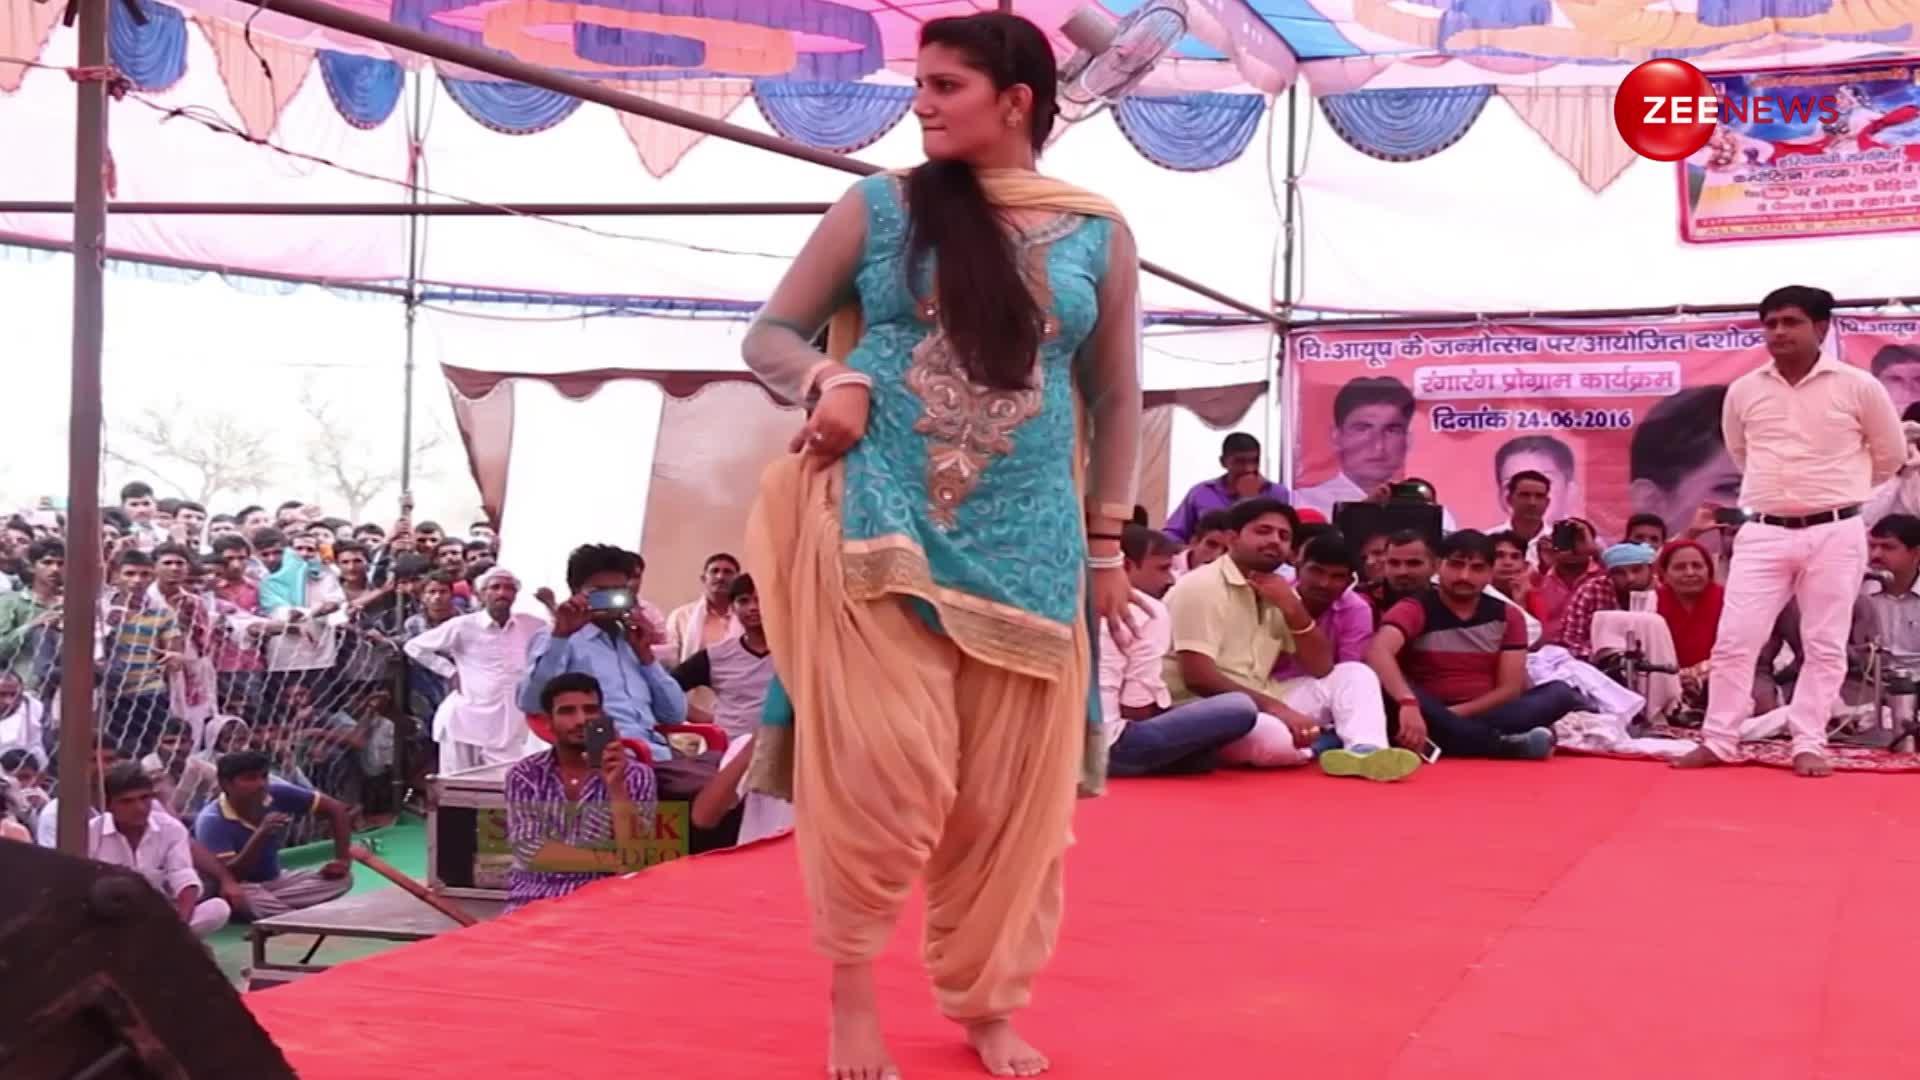 'मड़कन आली जुत्ती' गाने पर Sapna Choudhary ने गांव के 9 लाख लोगों के सामने मटकाई ऐसी कमर, मूव्स देख अटक गई लोगों की निगाहें